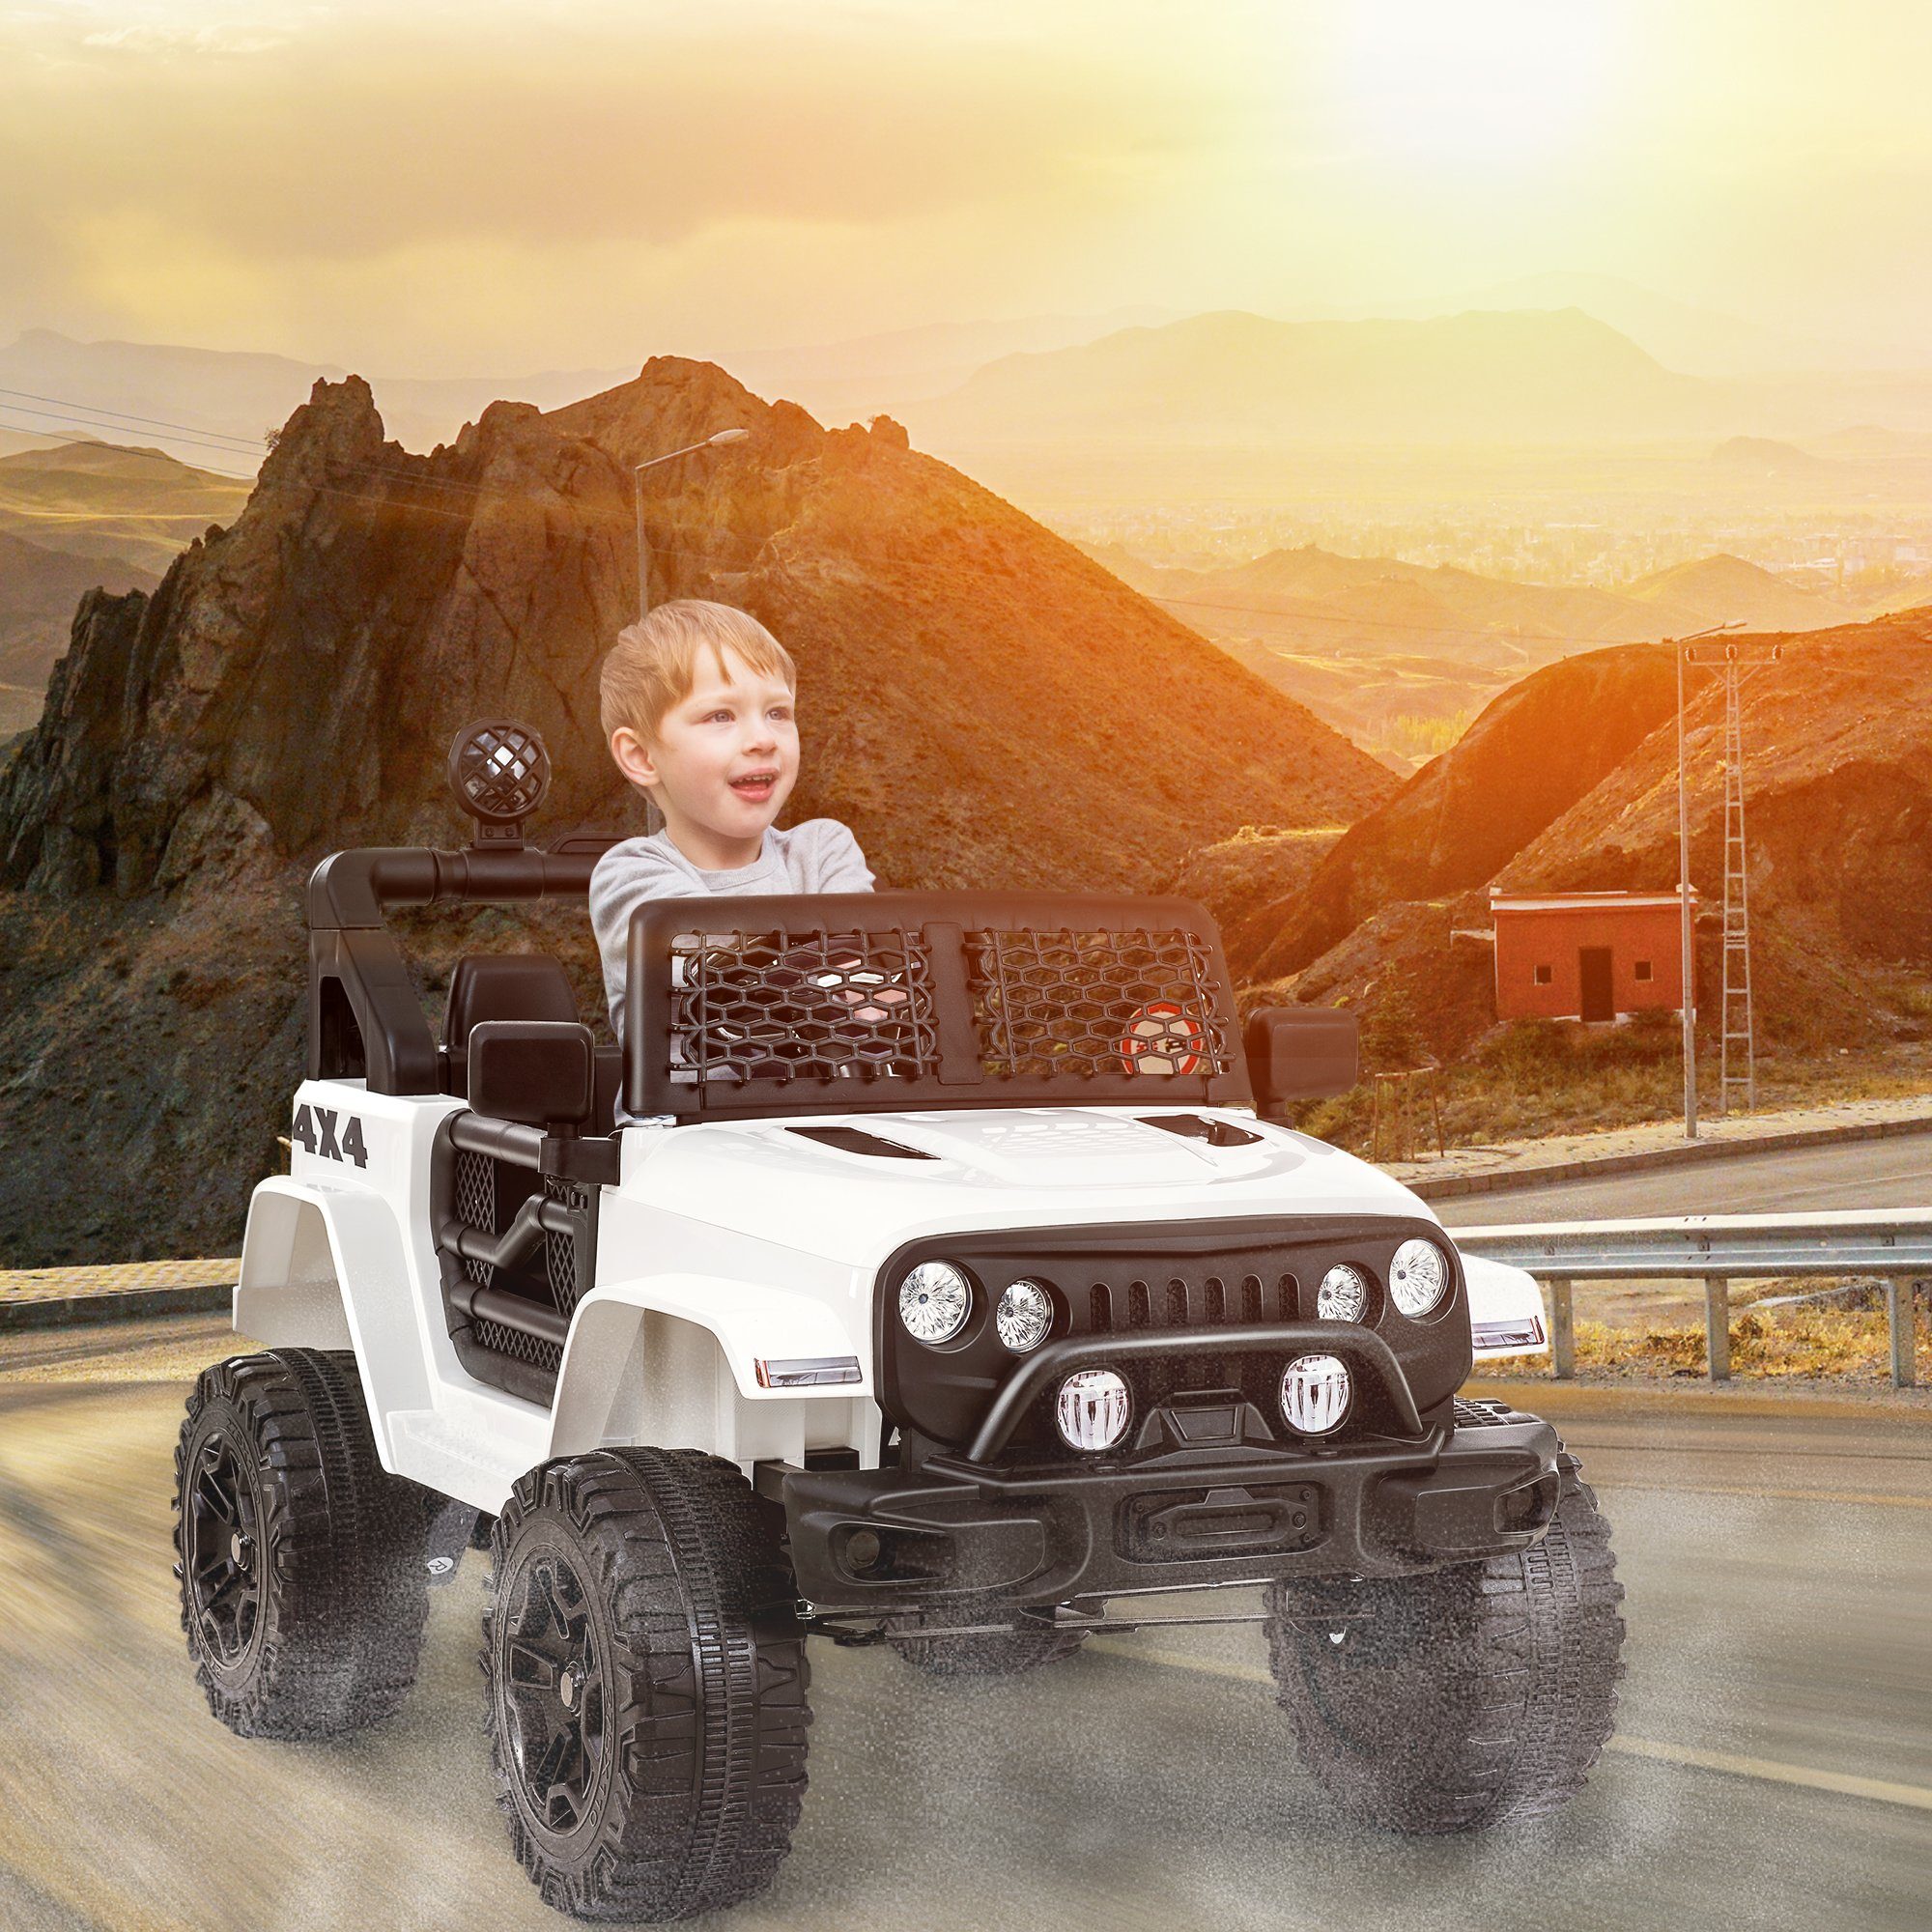 REDOM Elektro-Kinderauto 2 Sitze für Kinder mit 2,4G-Fernbedienung, Belastbarkeit 30 kg, 2 Gangs-Weicher Start-Elektroauto mit Hupe, Vorderlicht. 3-5 km/h